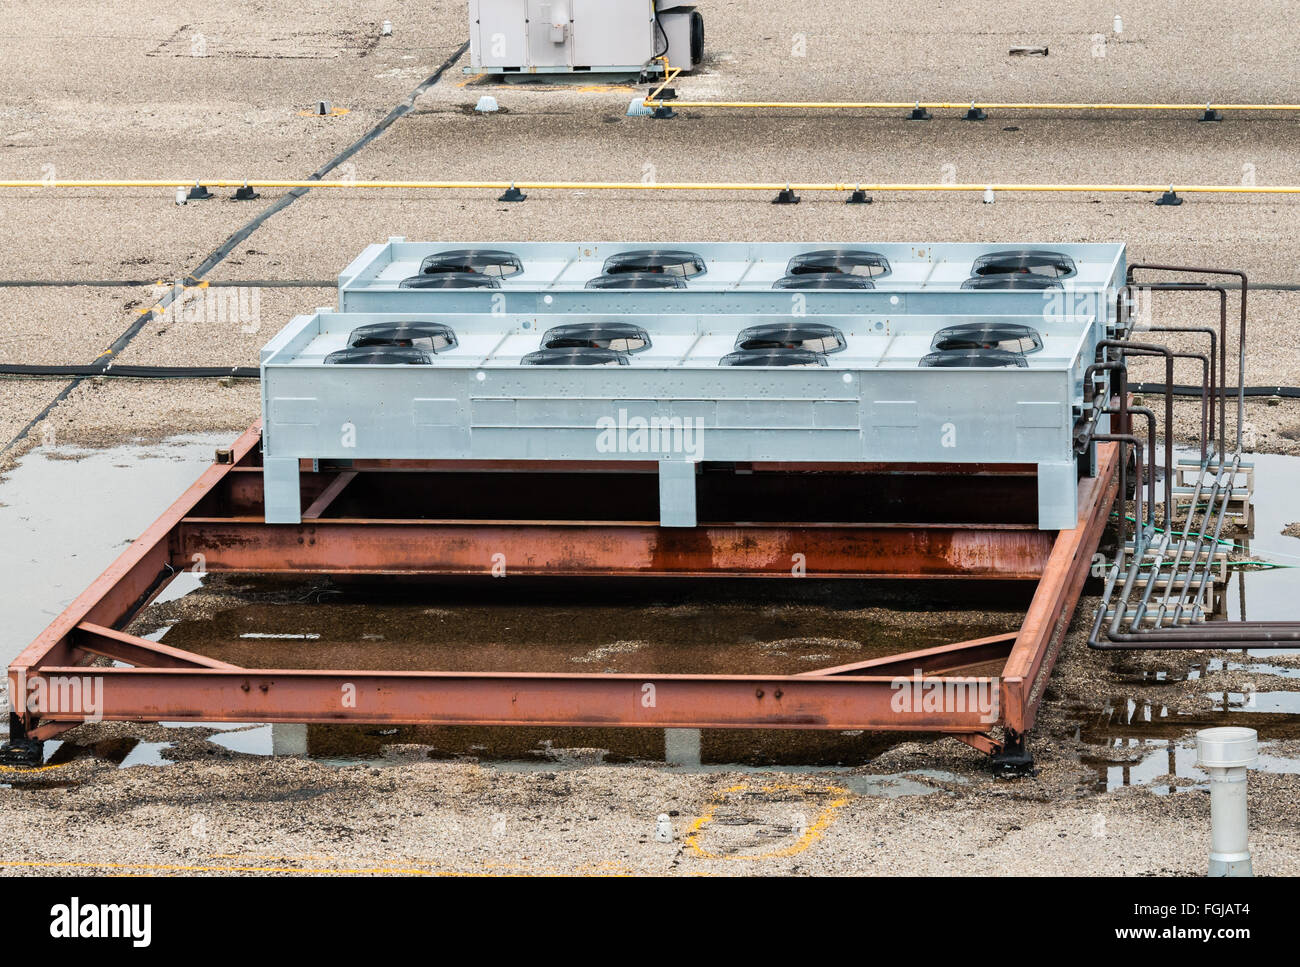 Ventole di aerazione, tubi, rosso di barre di acciaio, e altre macchine industriali su tetto piatto superiore, nelle pozze di acqua stagnante. Foto Stock